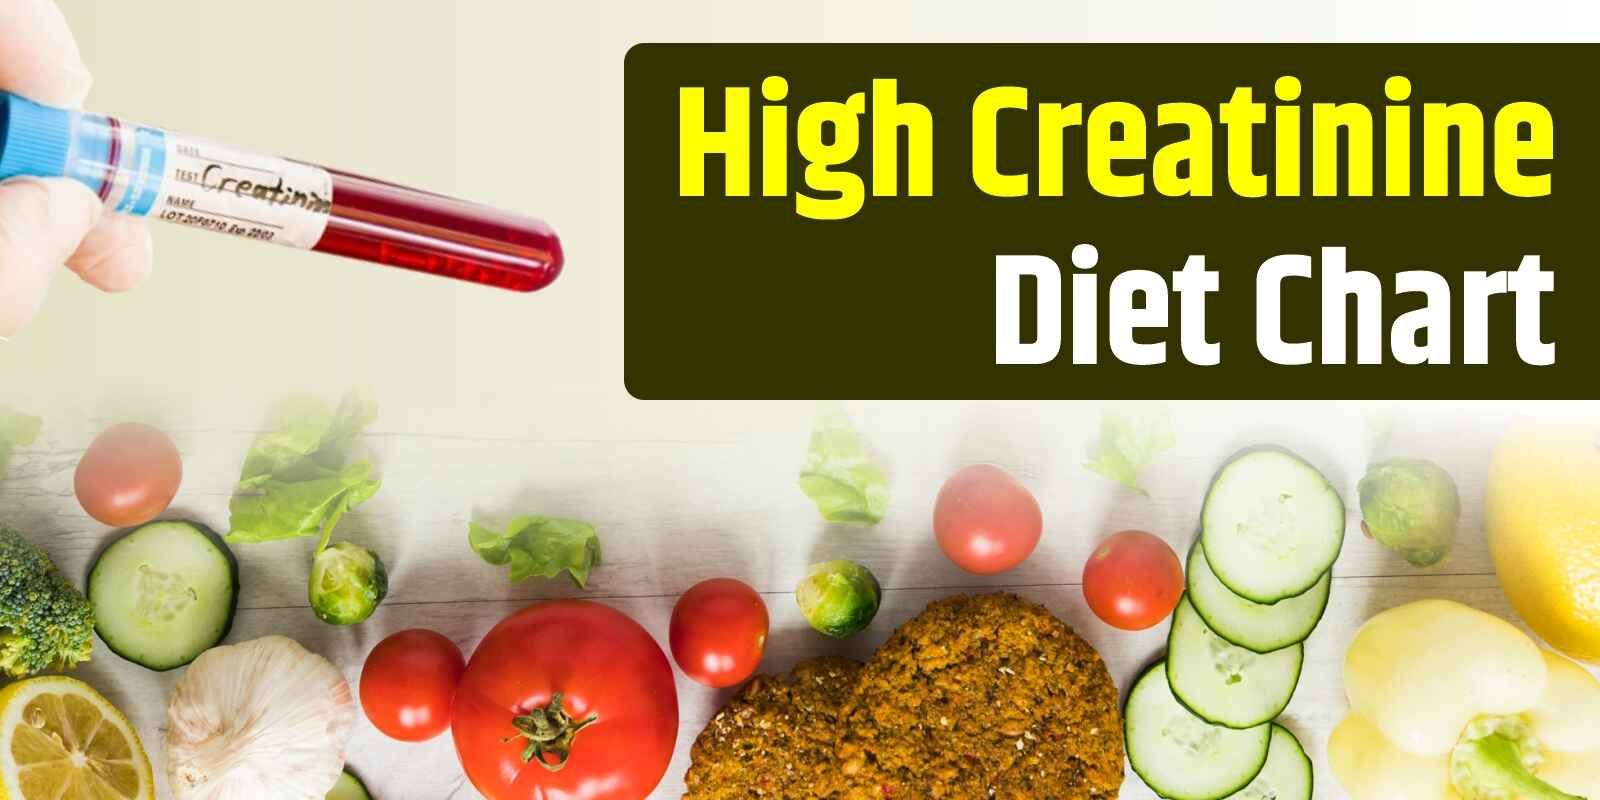 High Creatinine Diet Chart